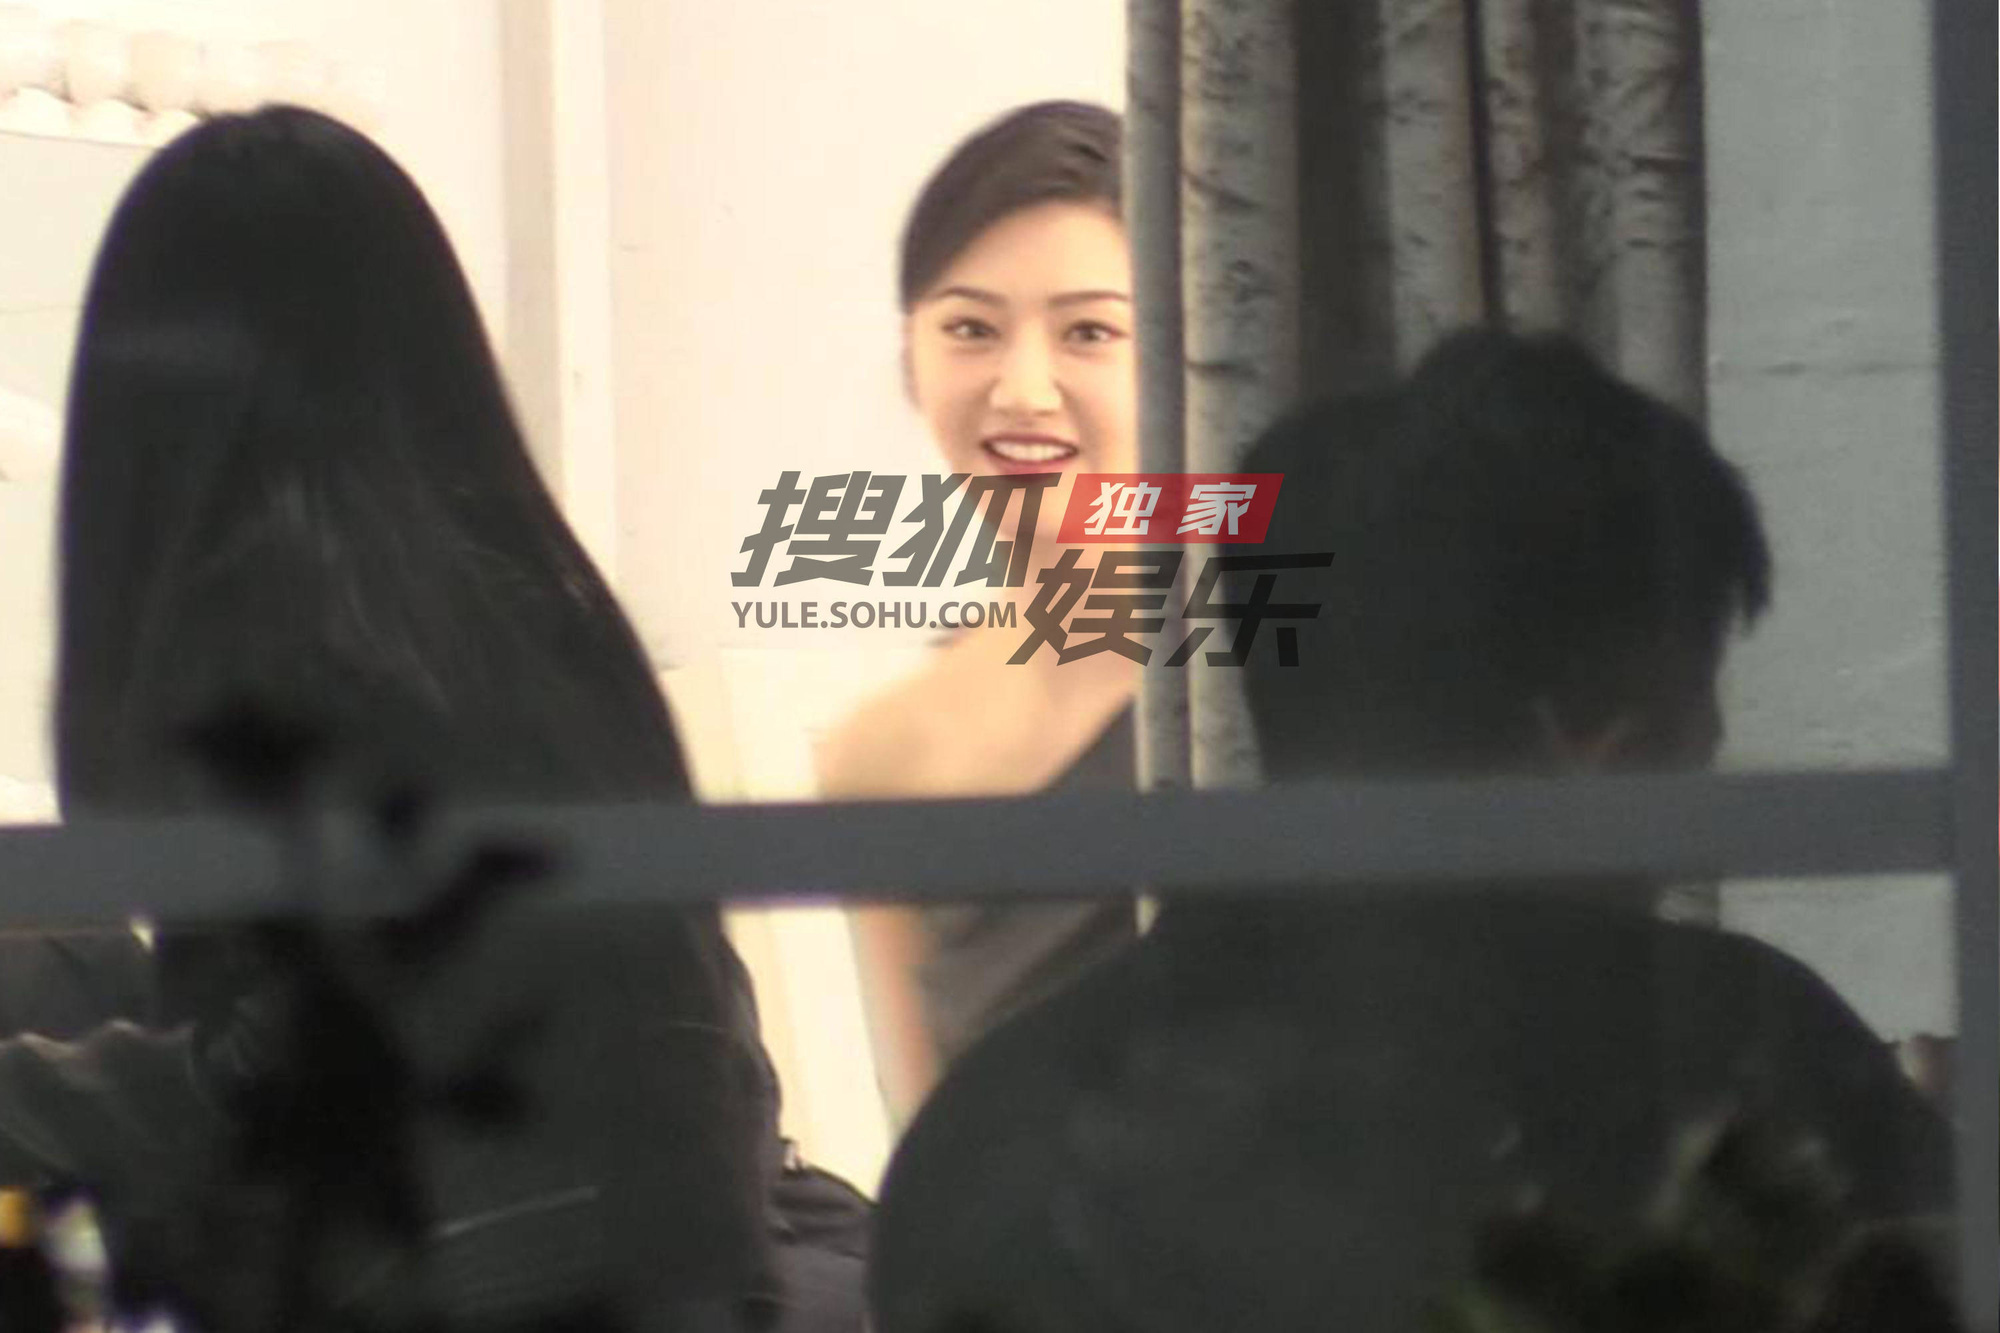 Ảnh chụp trộm của người đẹp Bắc Kinh thế nào mà khiến netizen "đổ rầm rầm" - Ảnh 3.